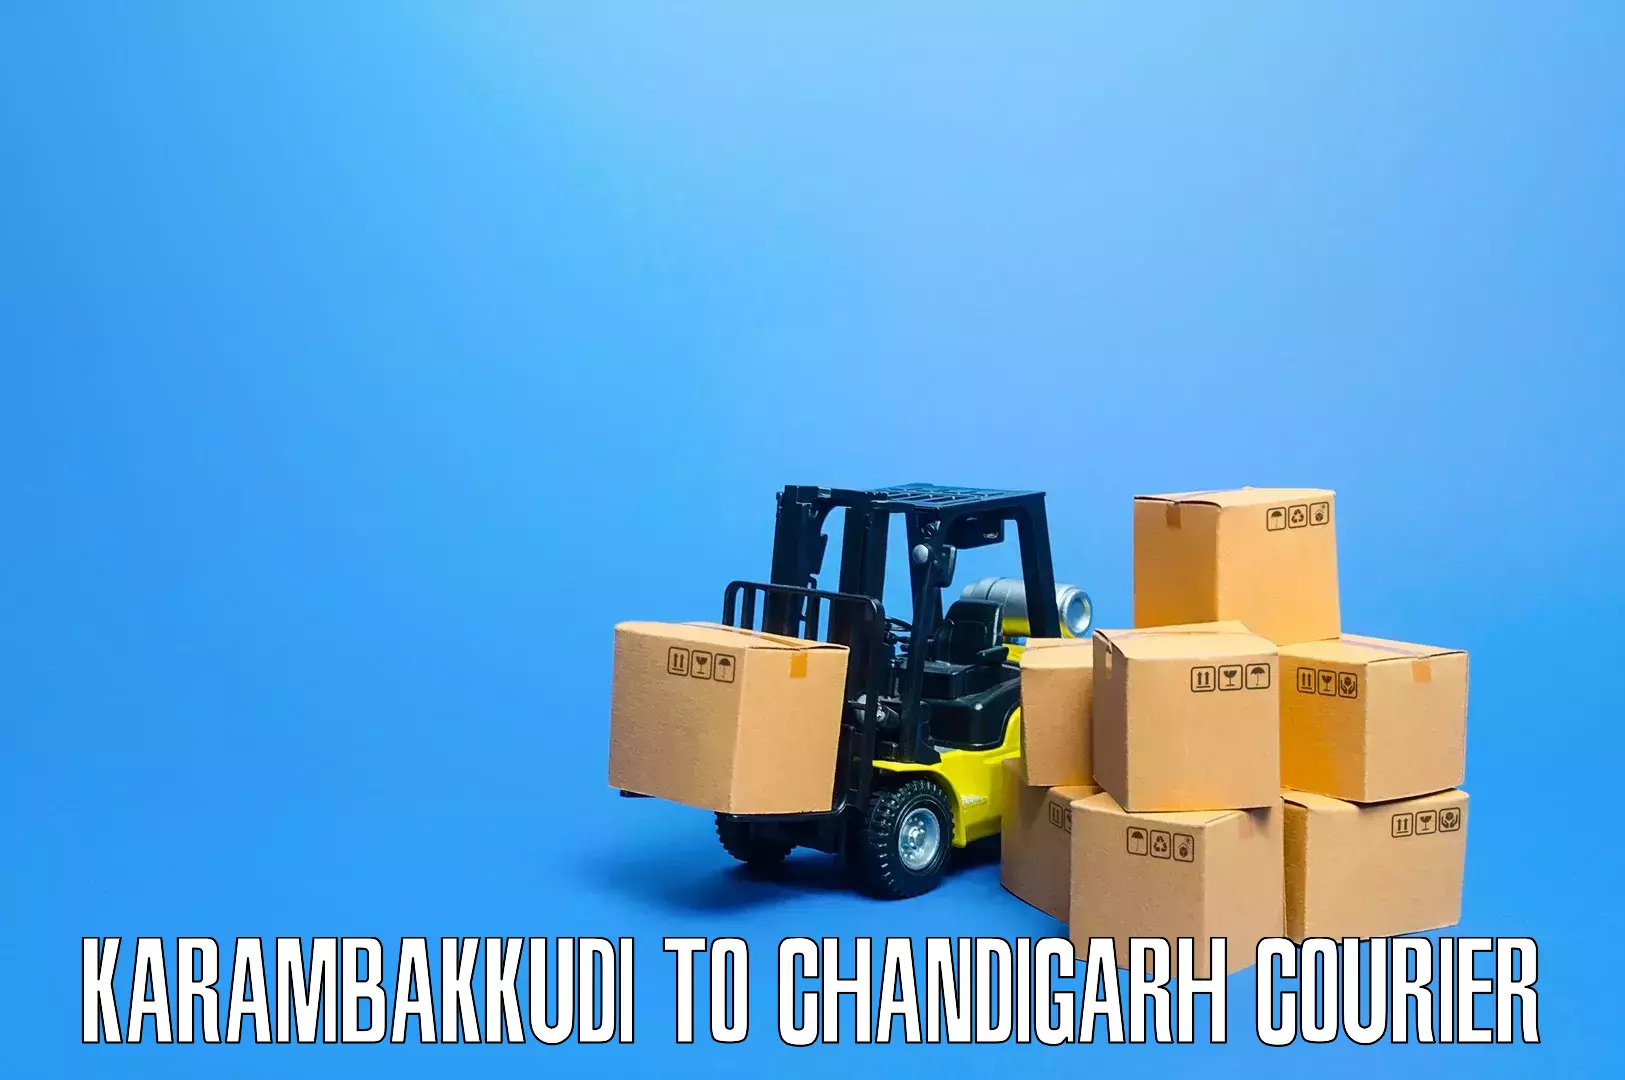 Home goods movers Karambakkudi to Kharar